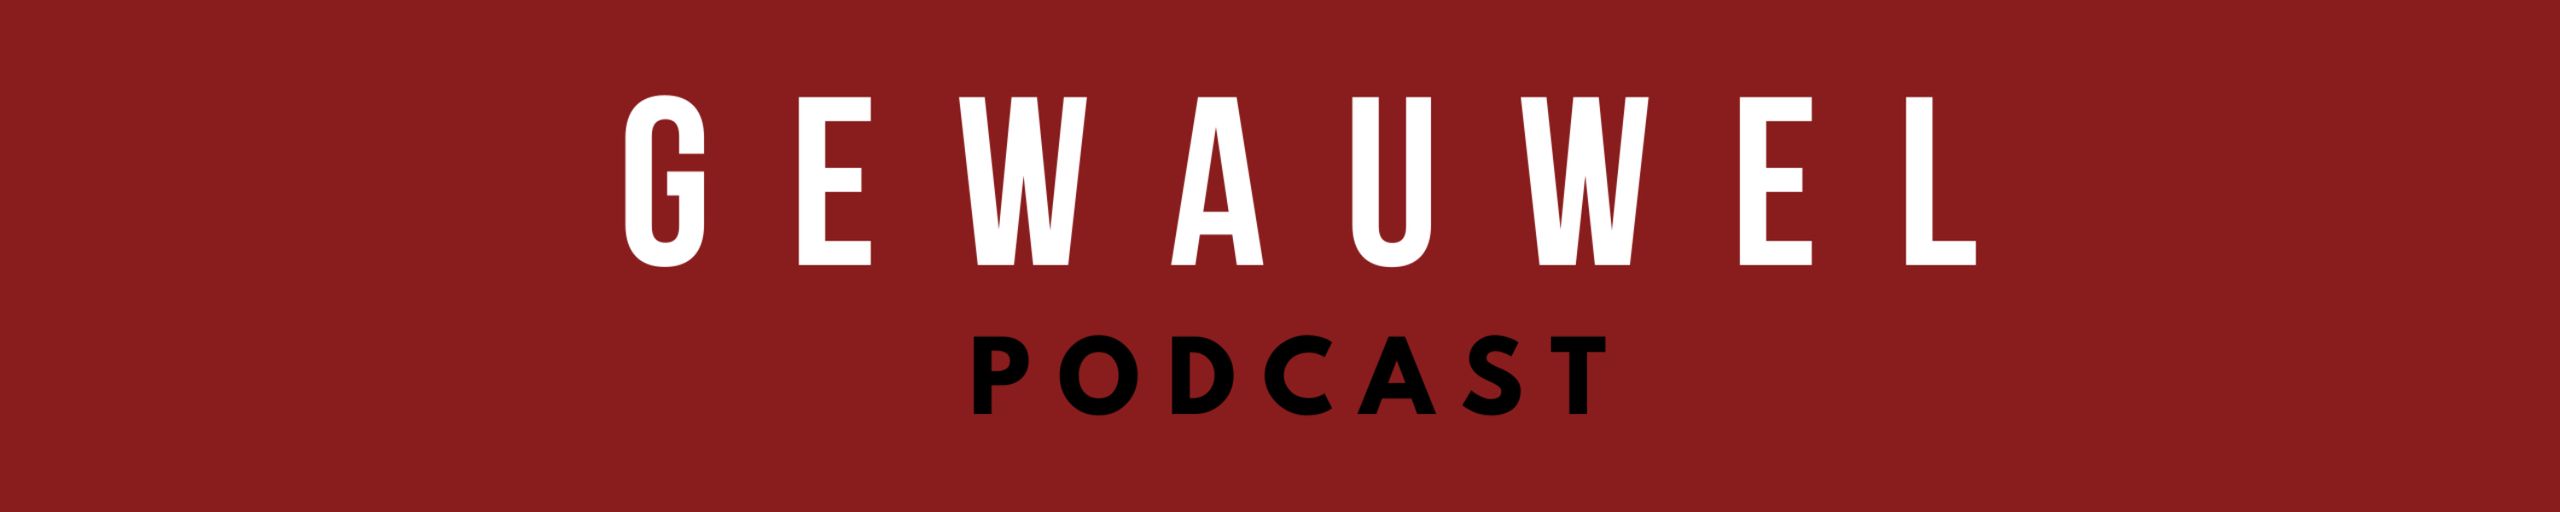 Gewauwel Podcast